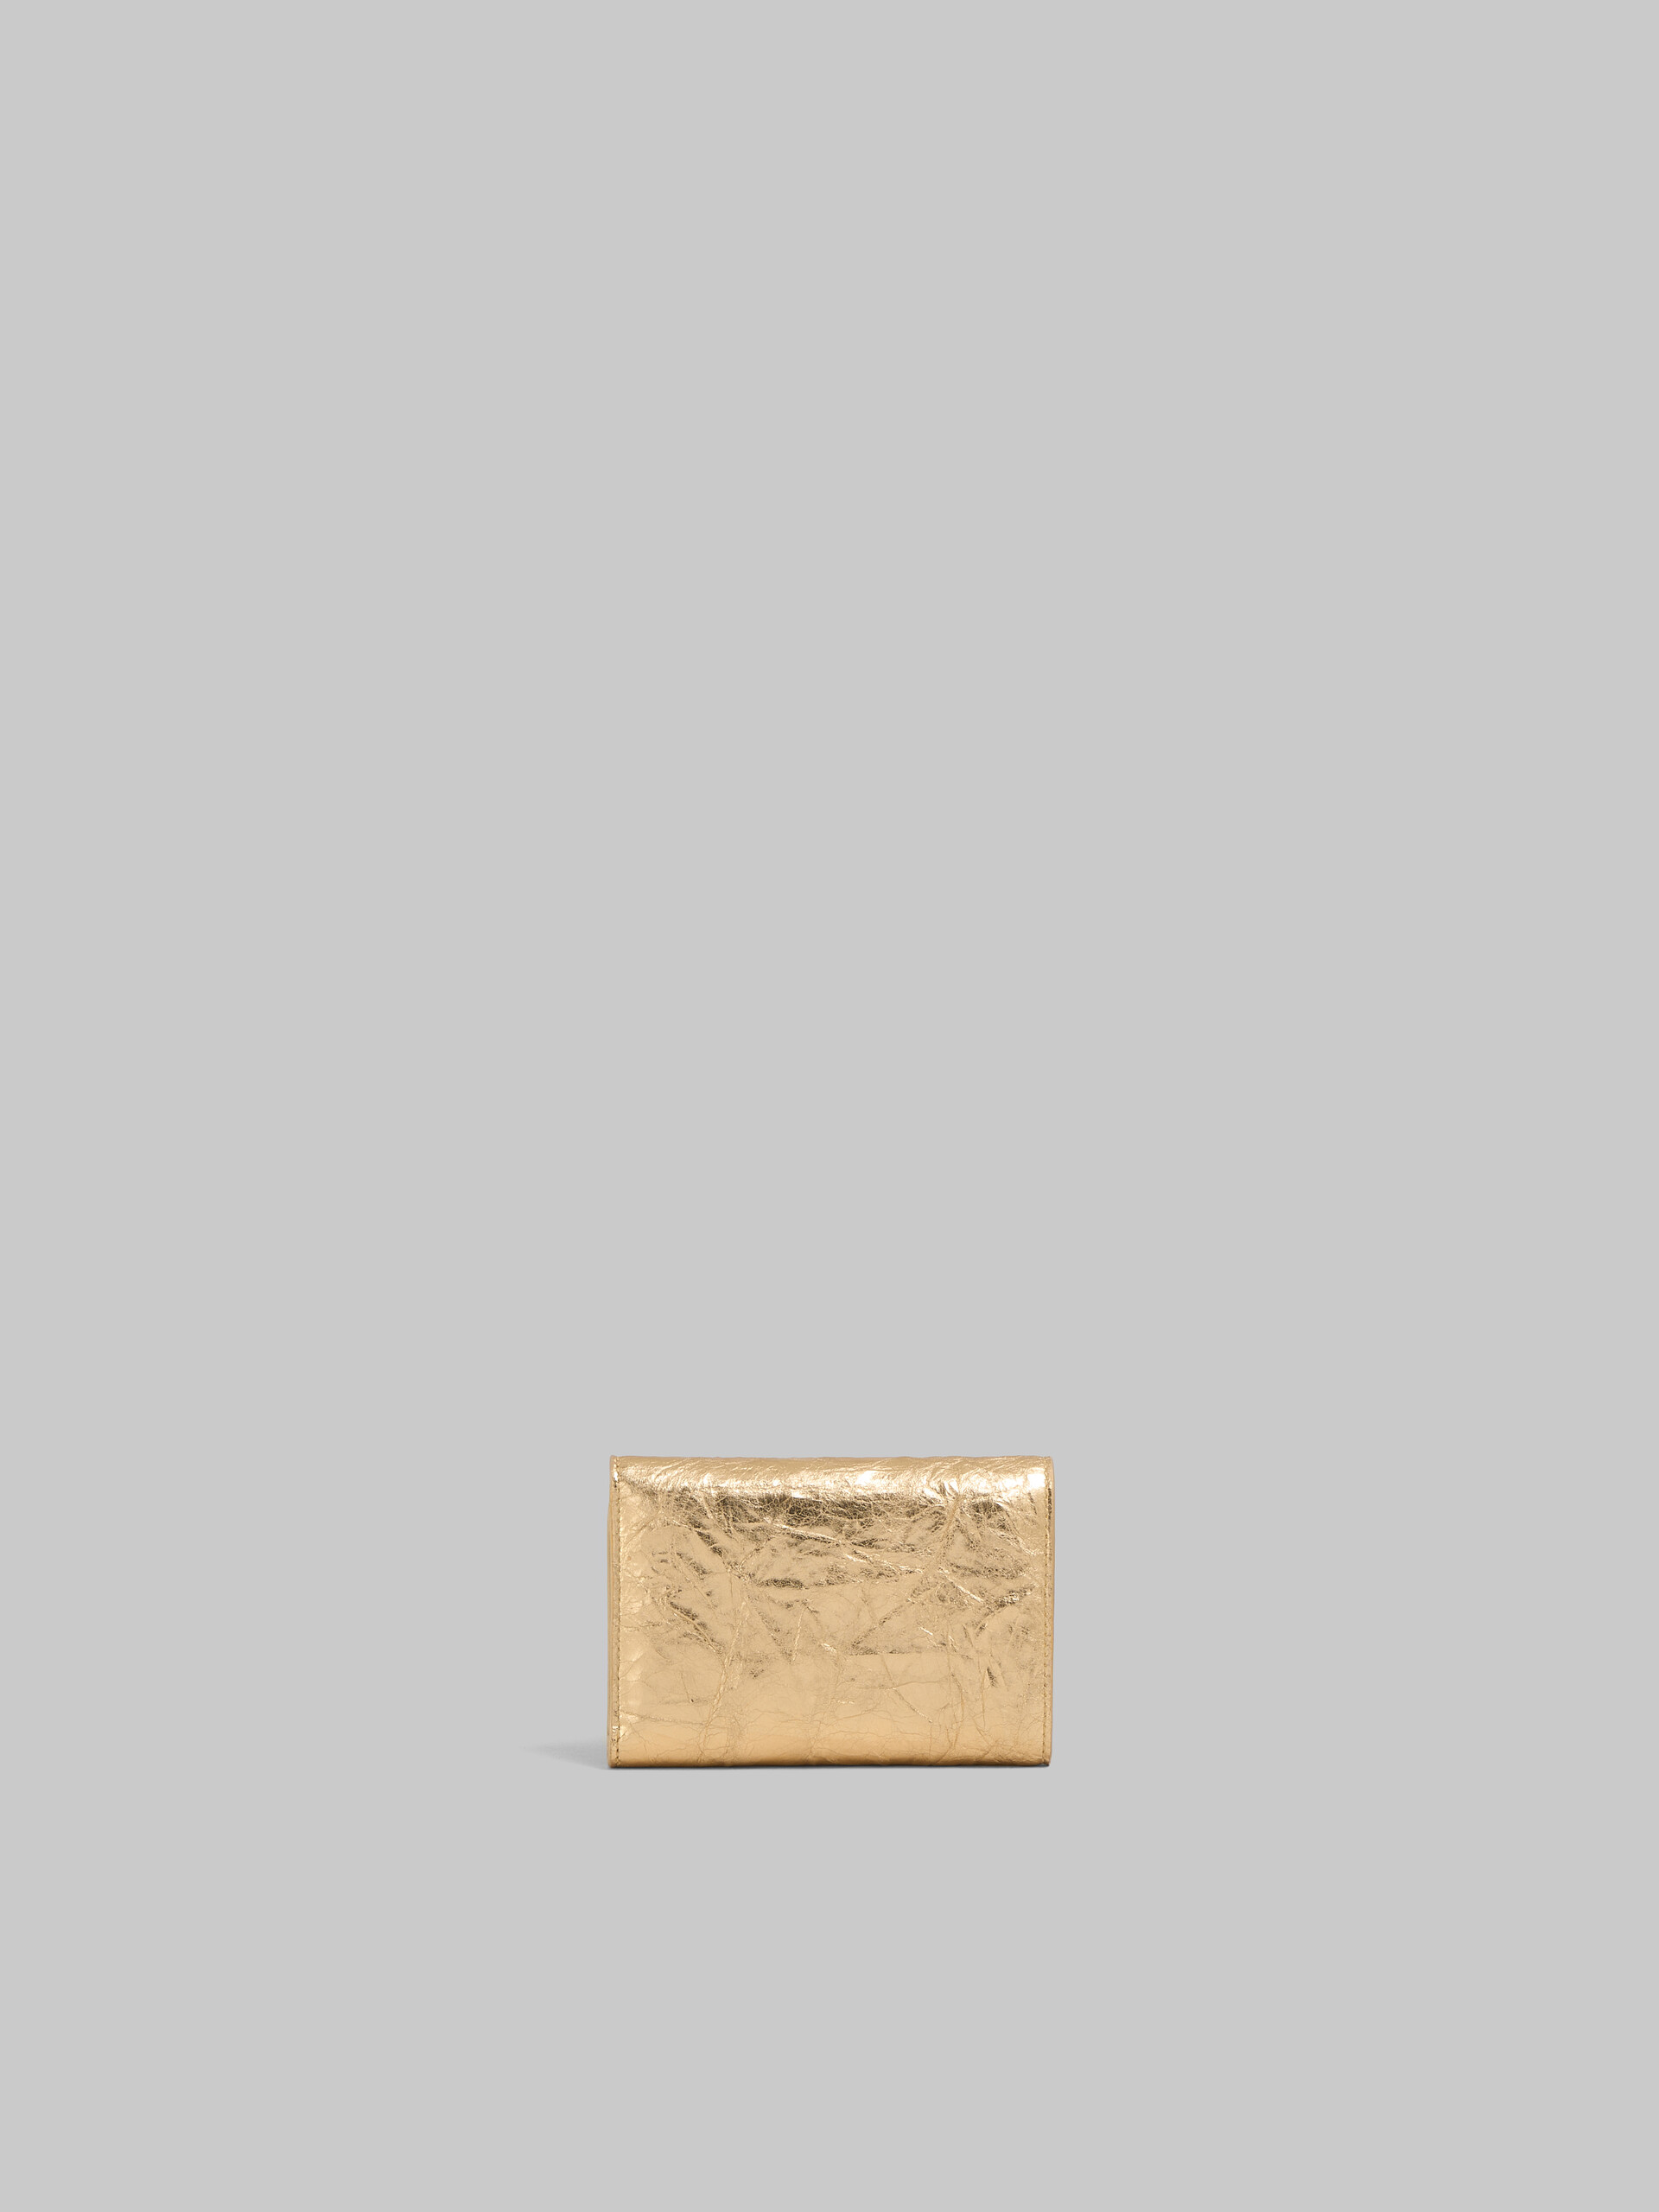 シルバー レザー製 三つ折り Prisma ウォレット - 財布 - Image 3